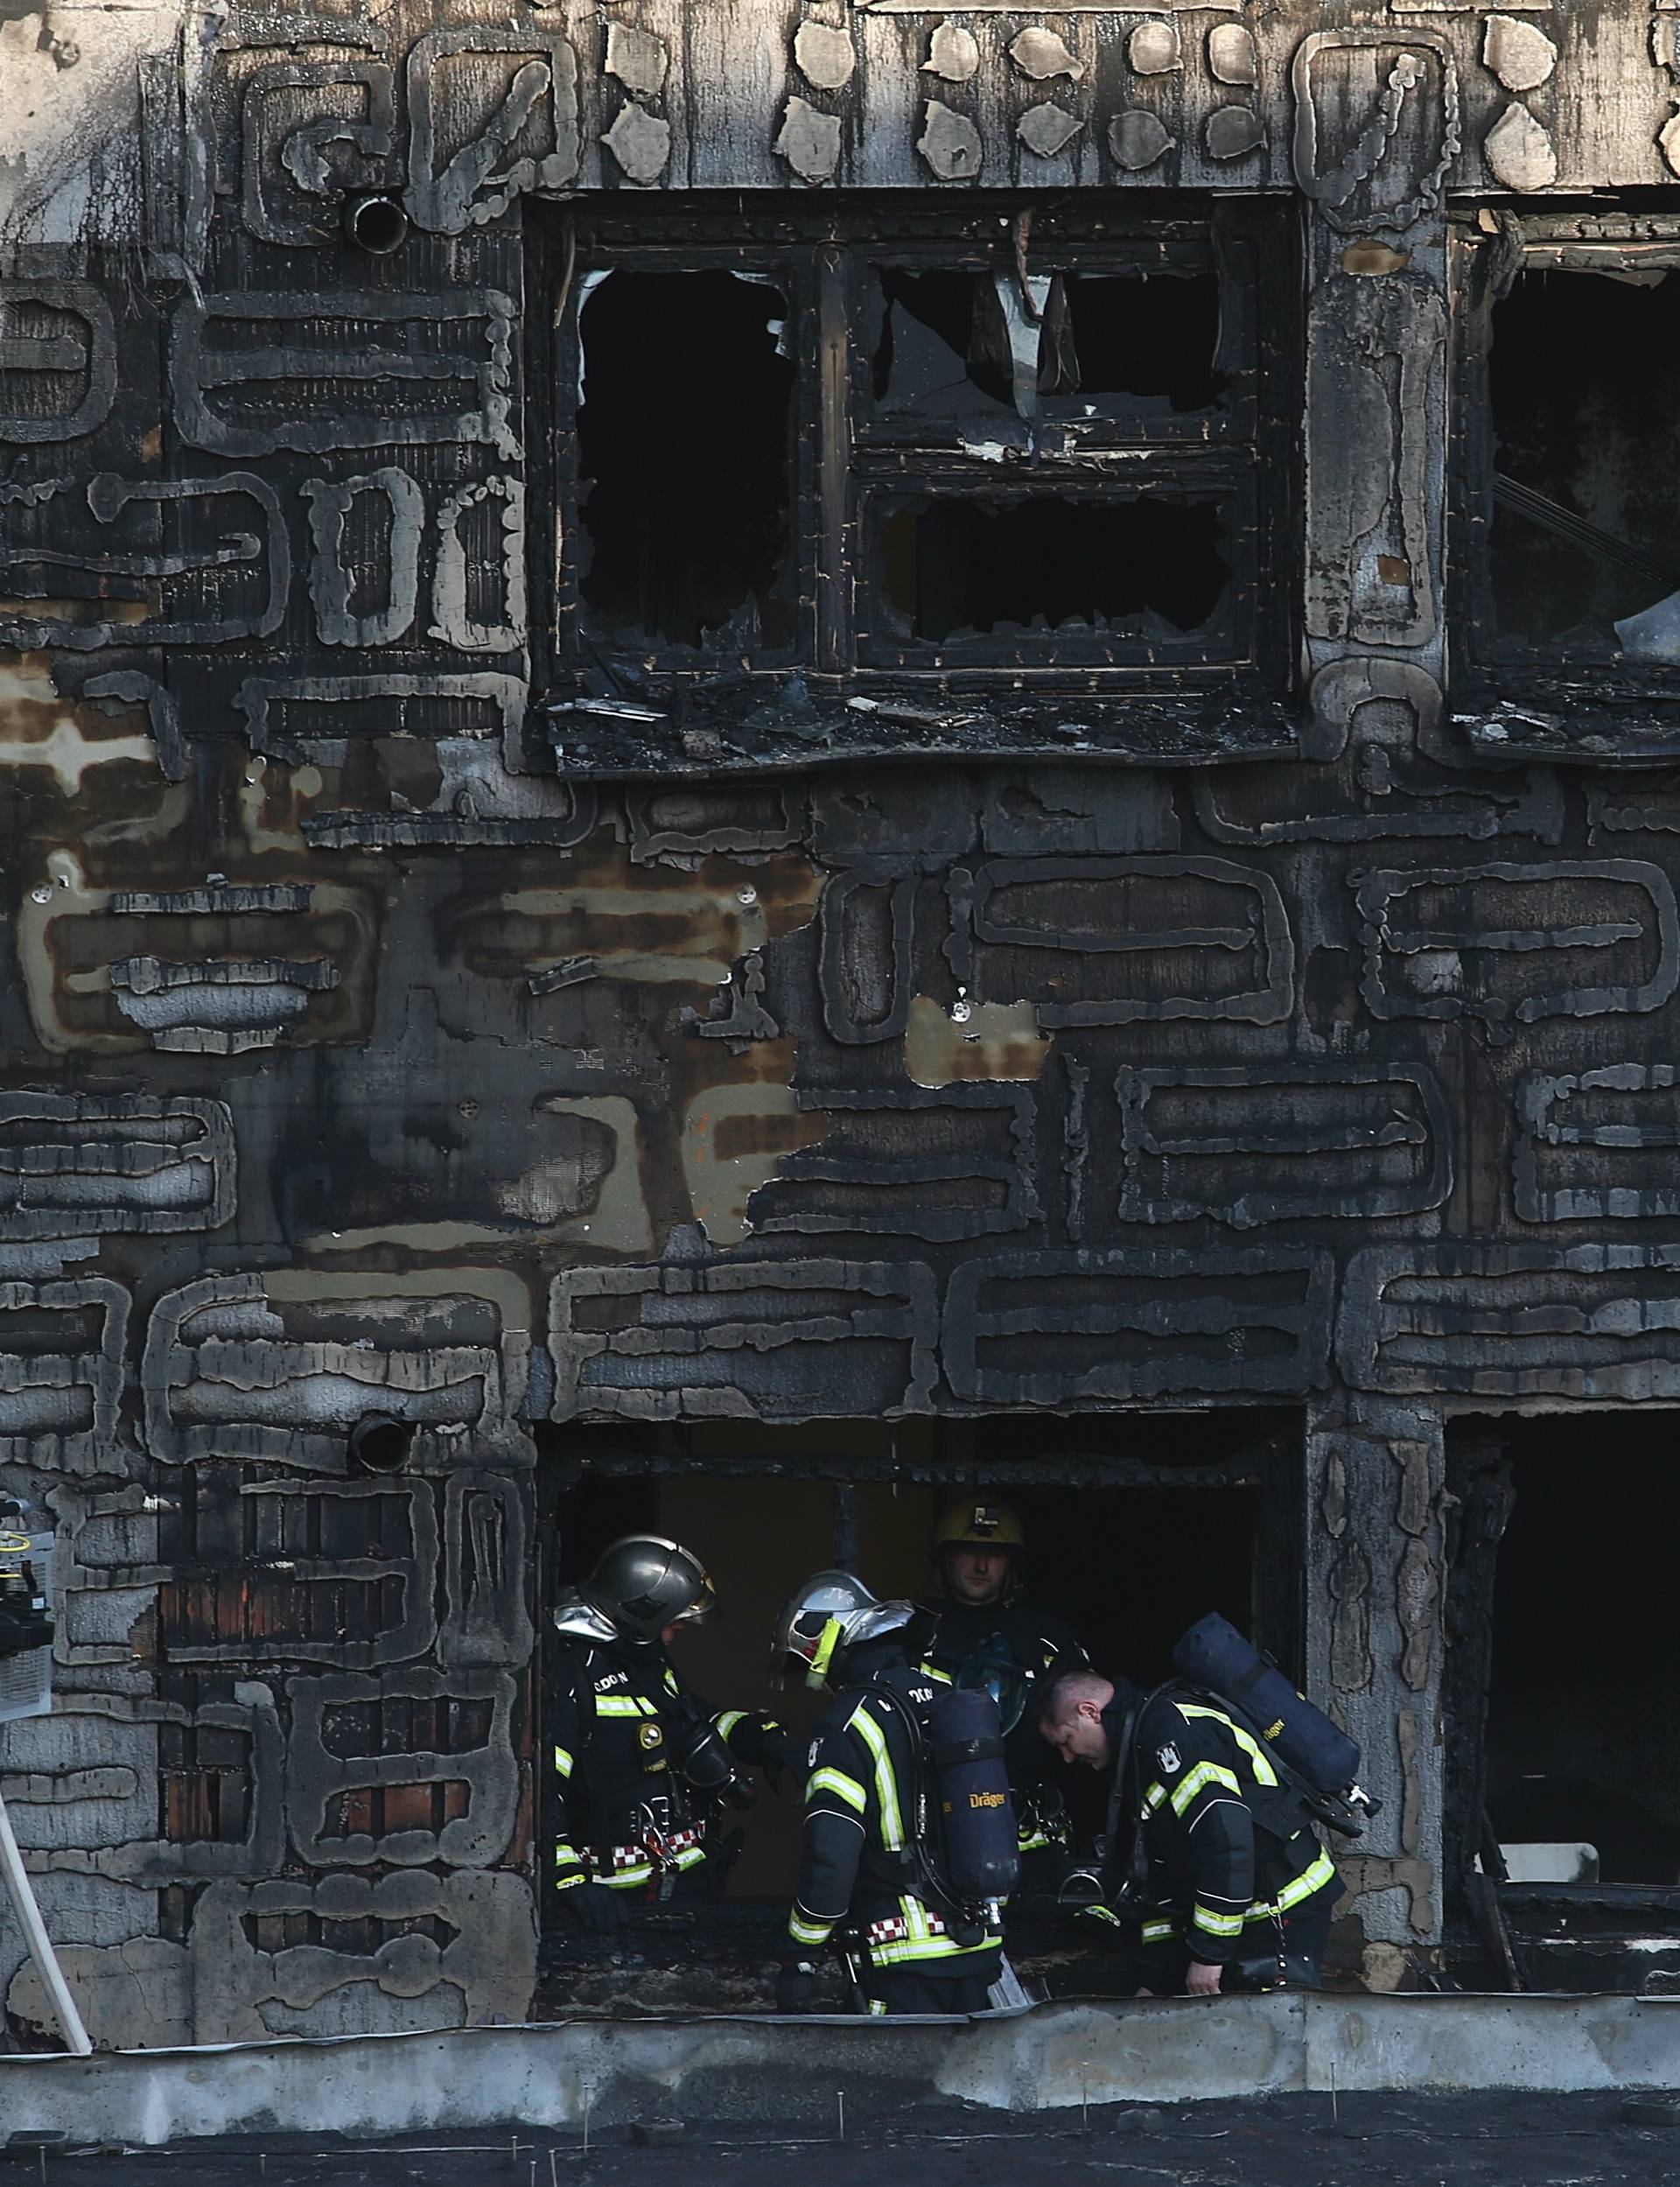 Otkrili uzrok požara u domu: Za sve je kriv bačeni opušak?